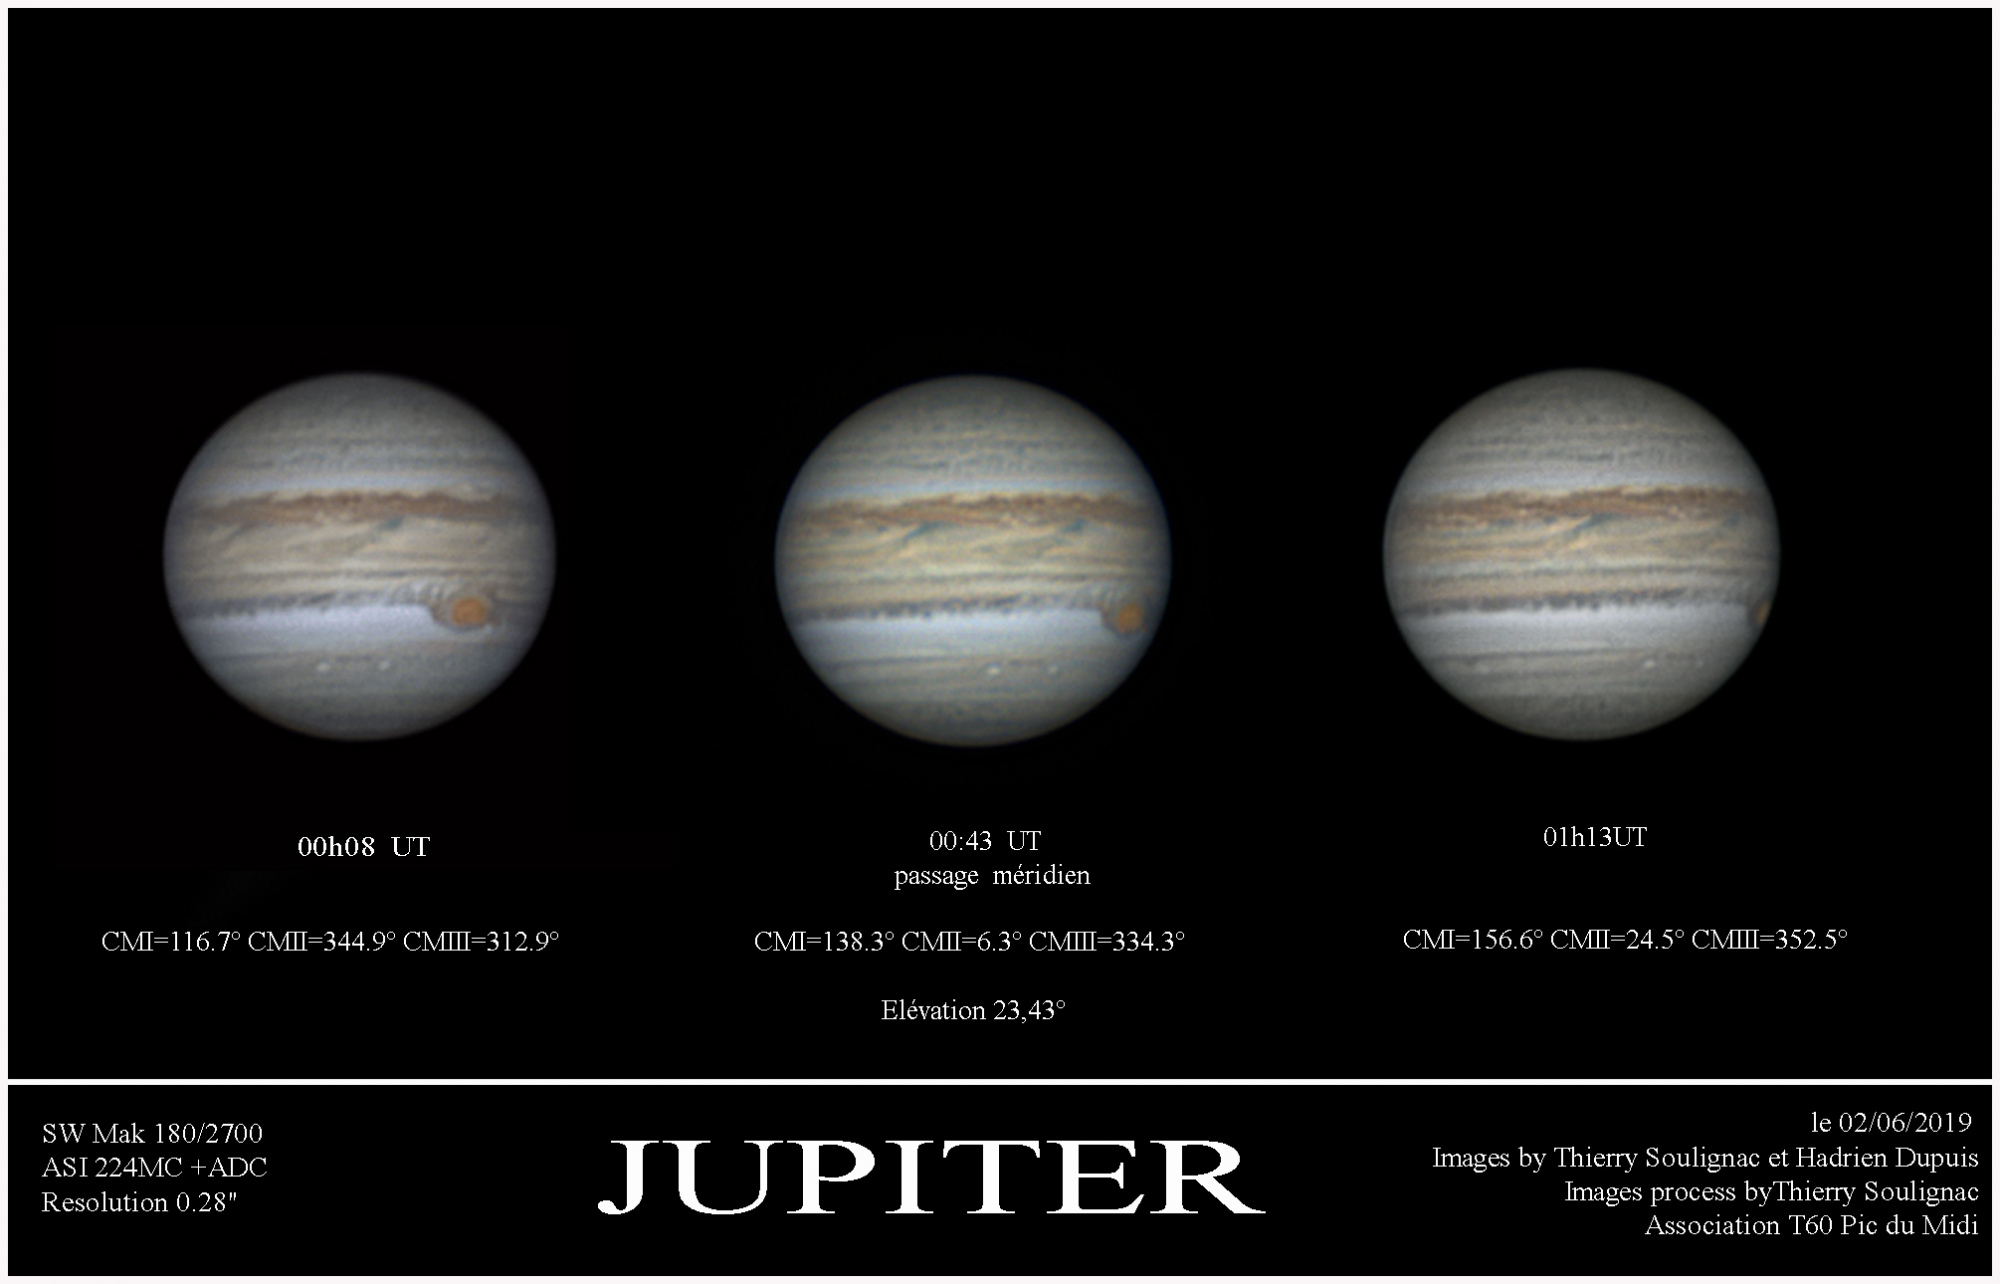 presentation Jupiter 02-06-2019.jpg